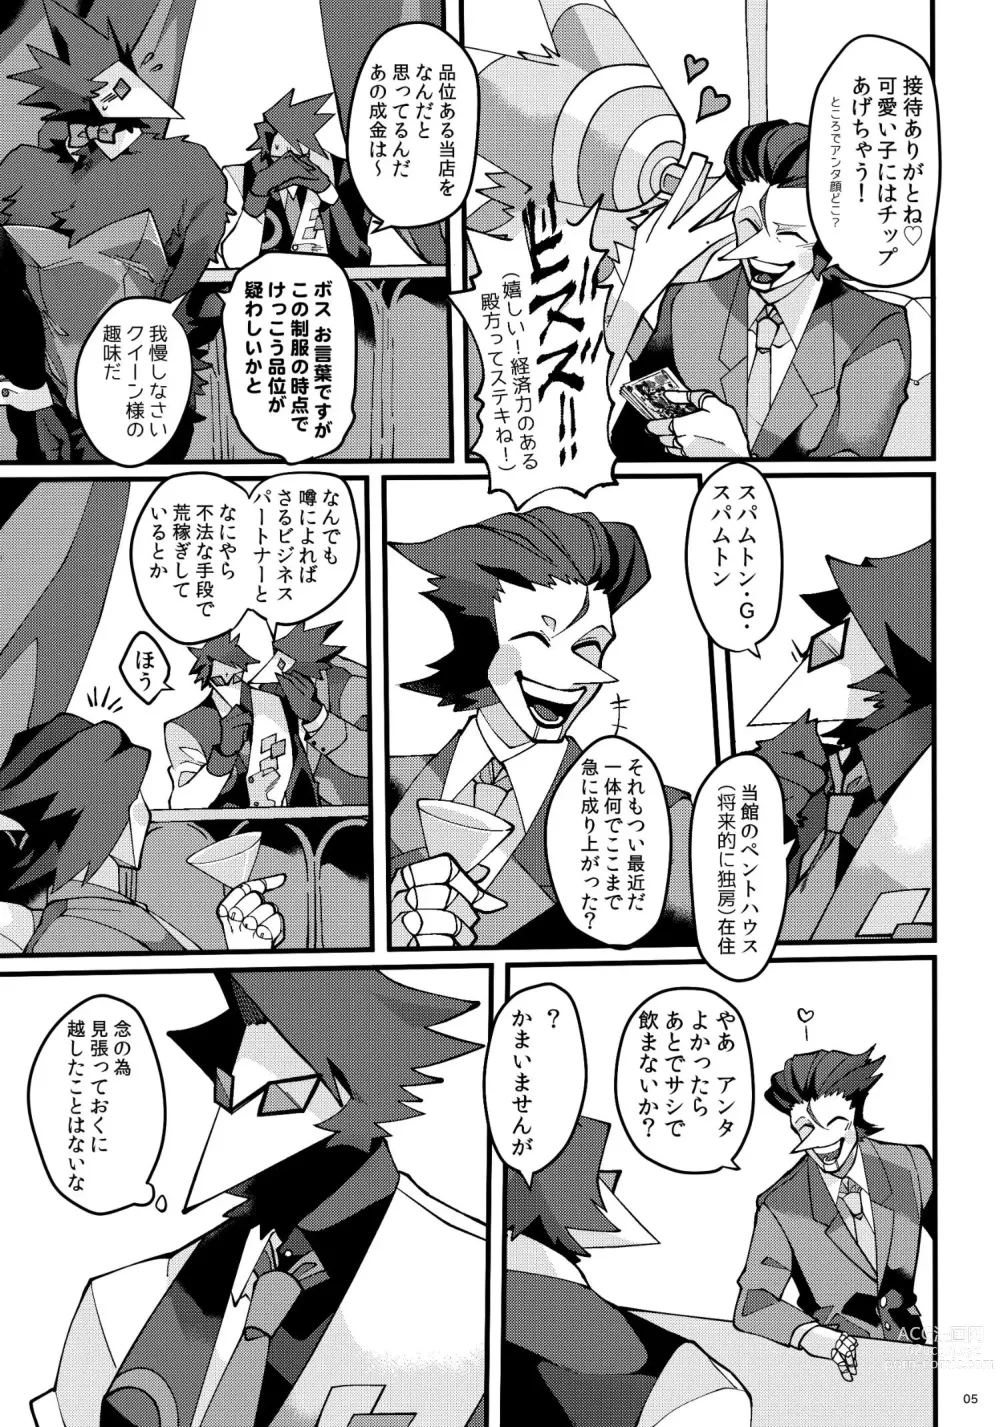 Page 6 of doujinshi Uchoutengai